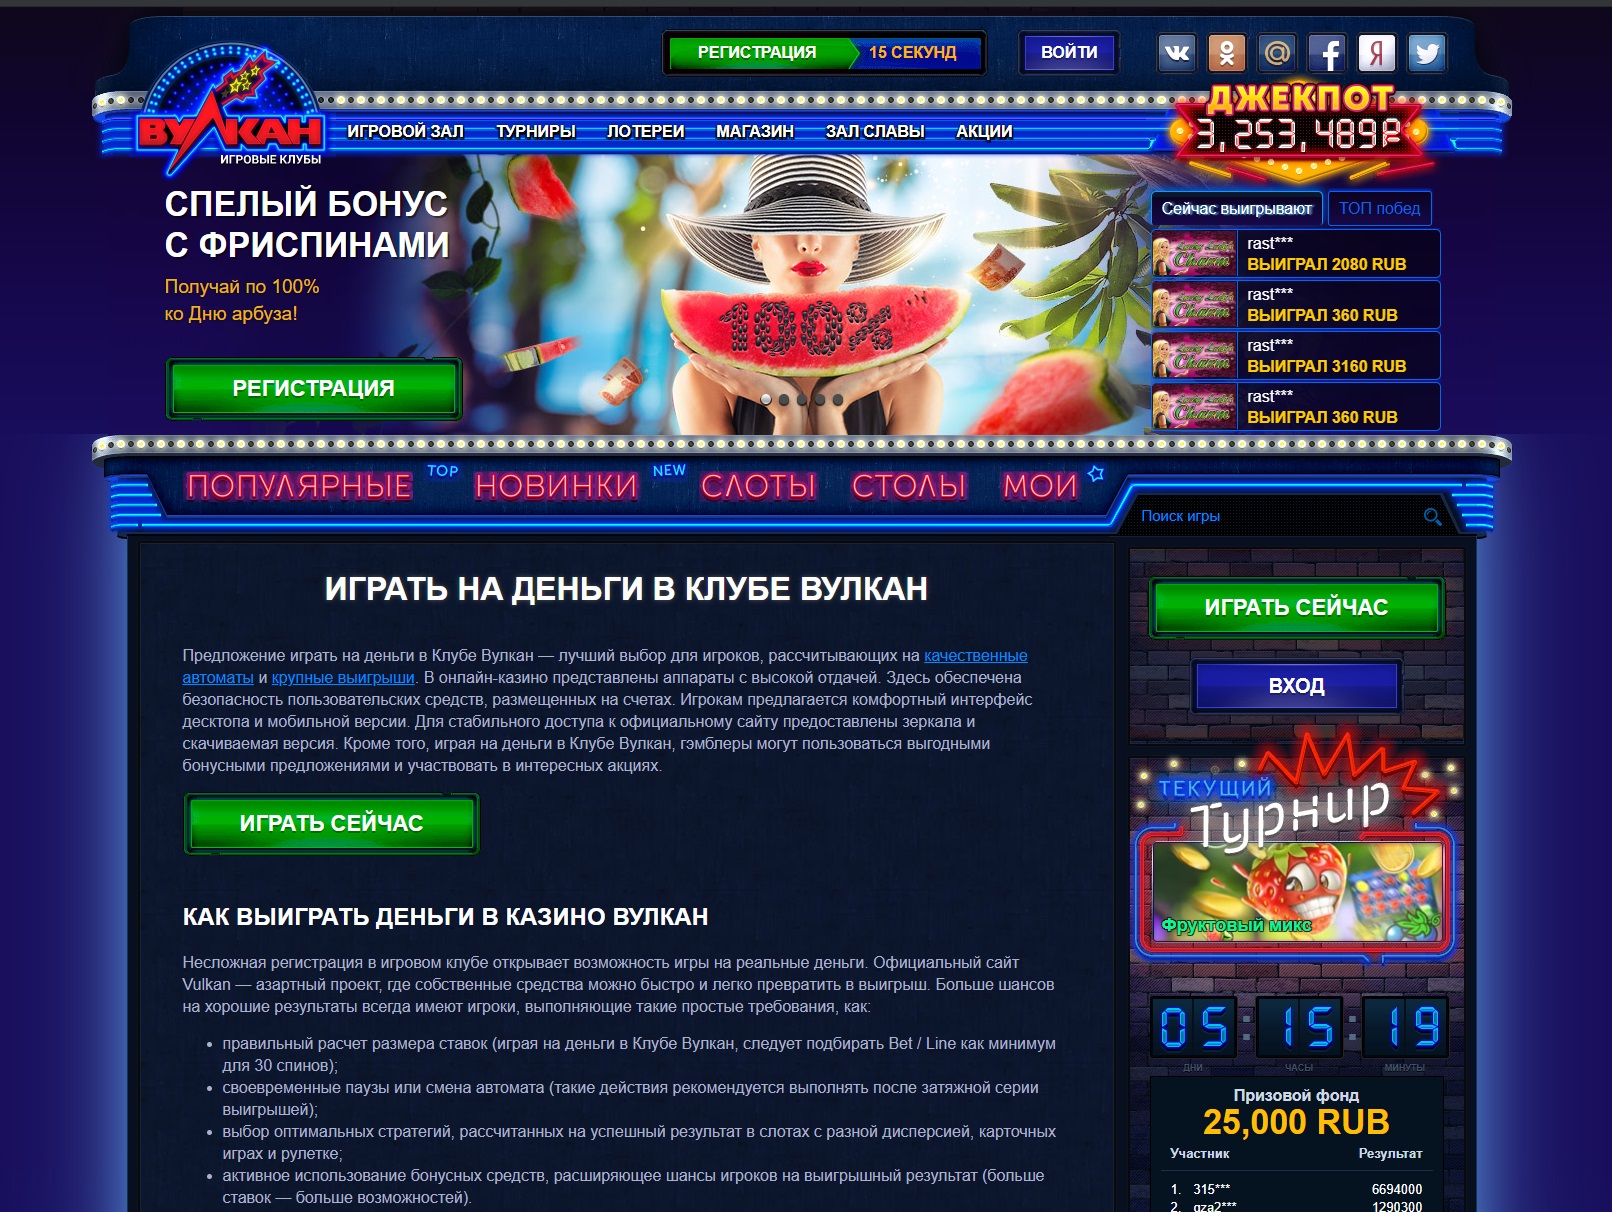 Онлайн казино вулкан играть на деньги официальный сайт с выводом мостбет узбекистан скачать бесплатно на телефон